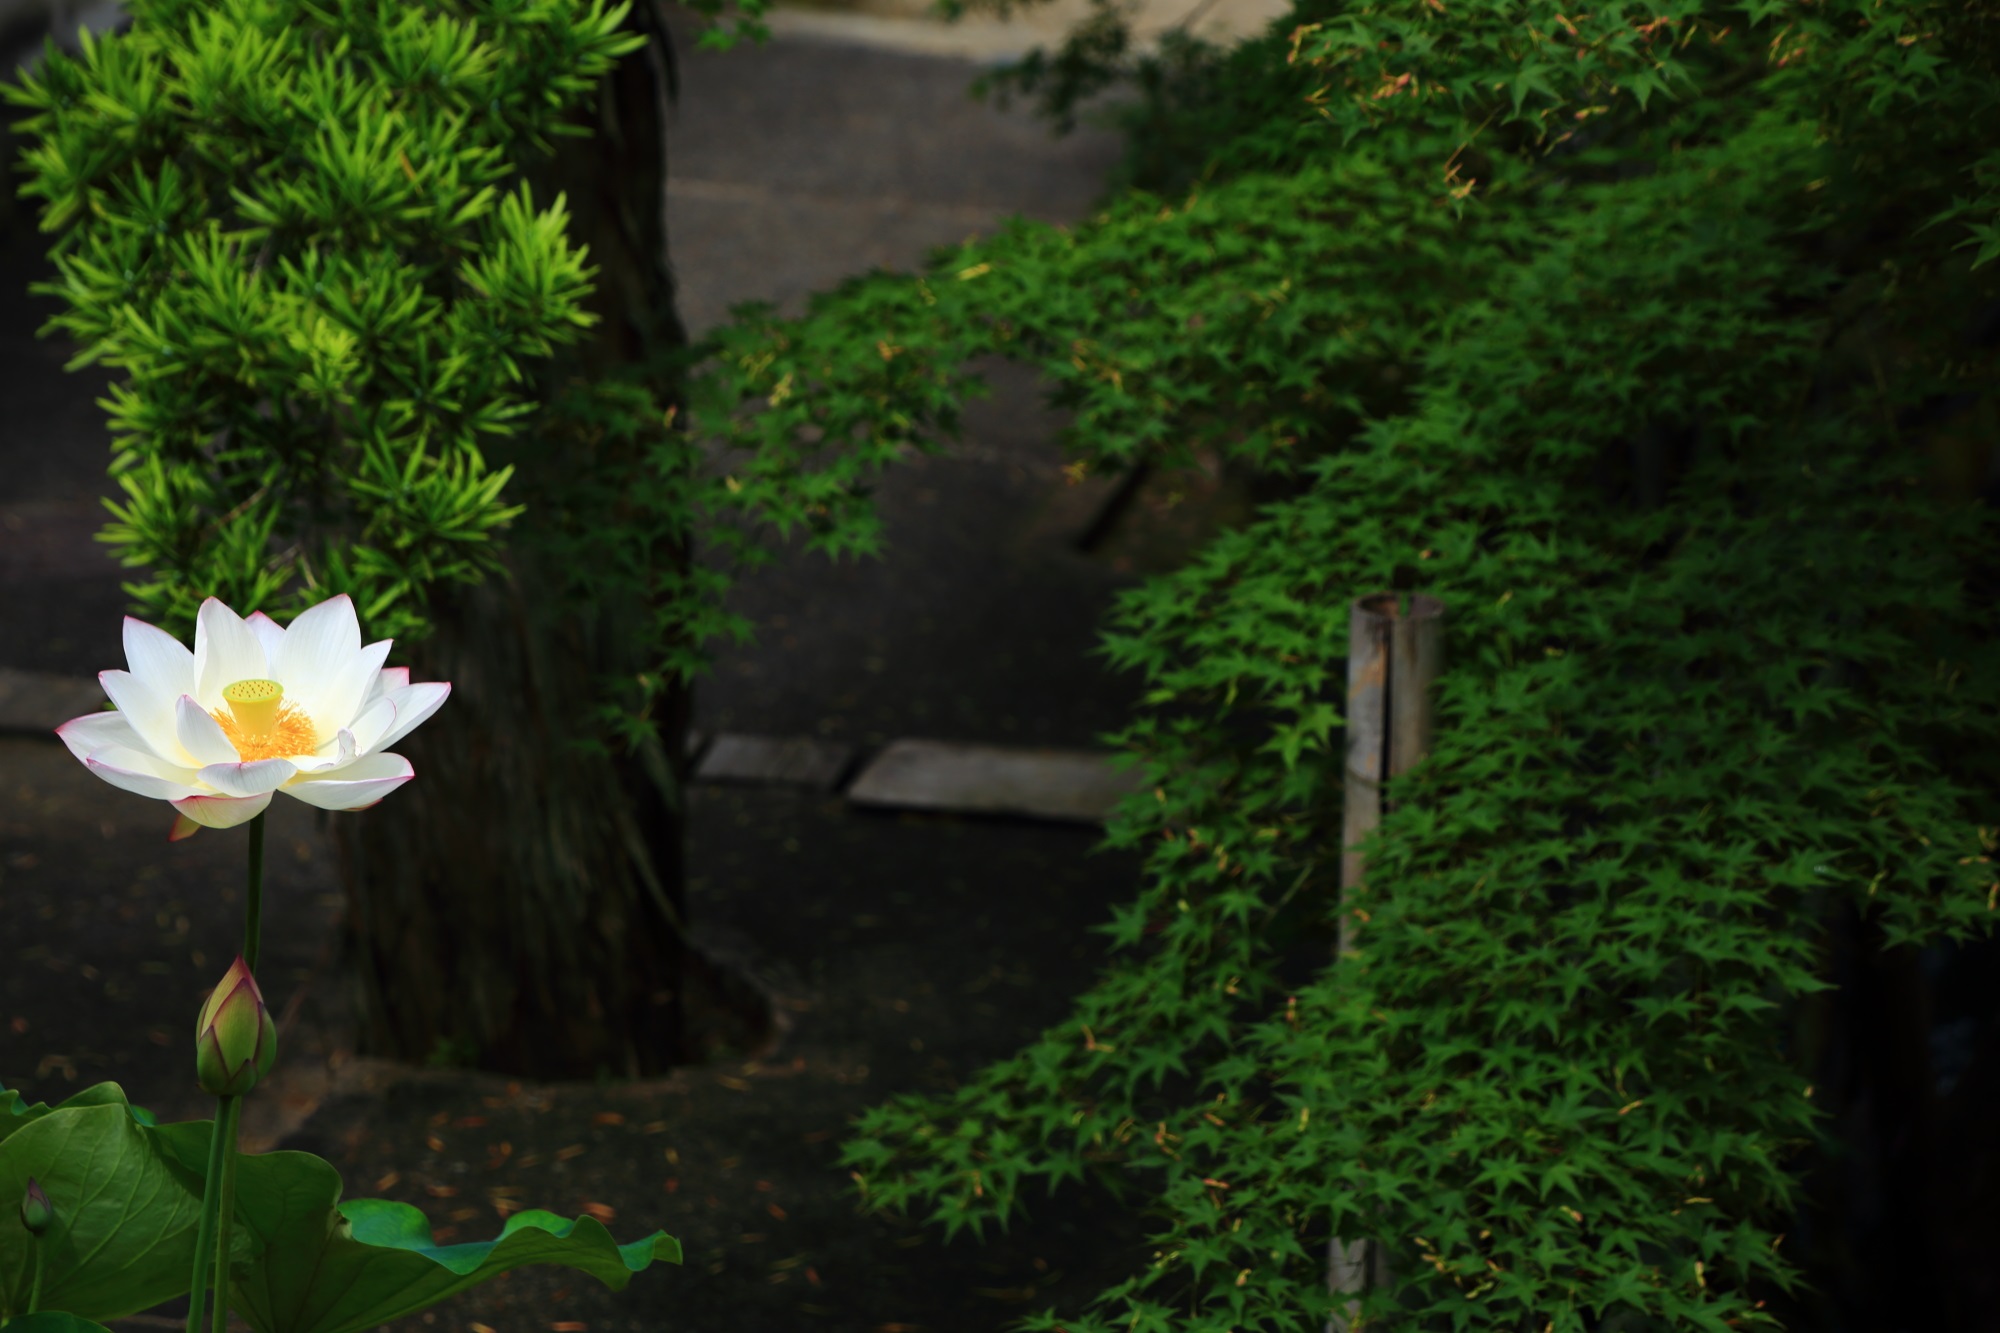 萬福寺の天王殿前の深い緑の青もみじと華やかな白い蓮の花